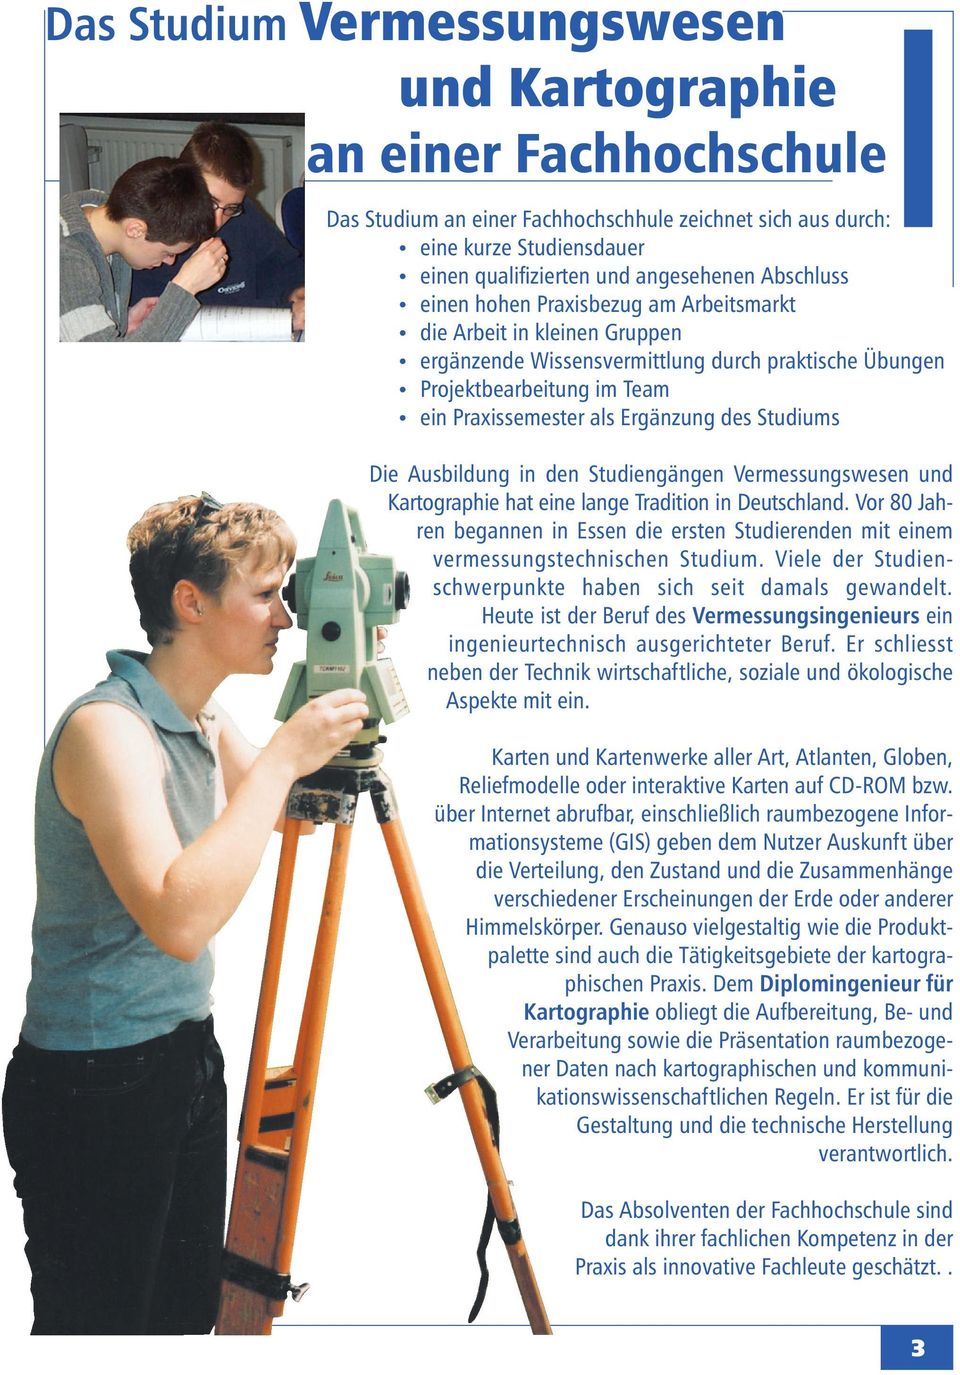 Studiums Die Ausbildung in den Studiengängen Vermessungswesen und Kartographie hat eine lange Tradition in Deutschland.